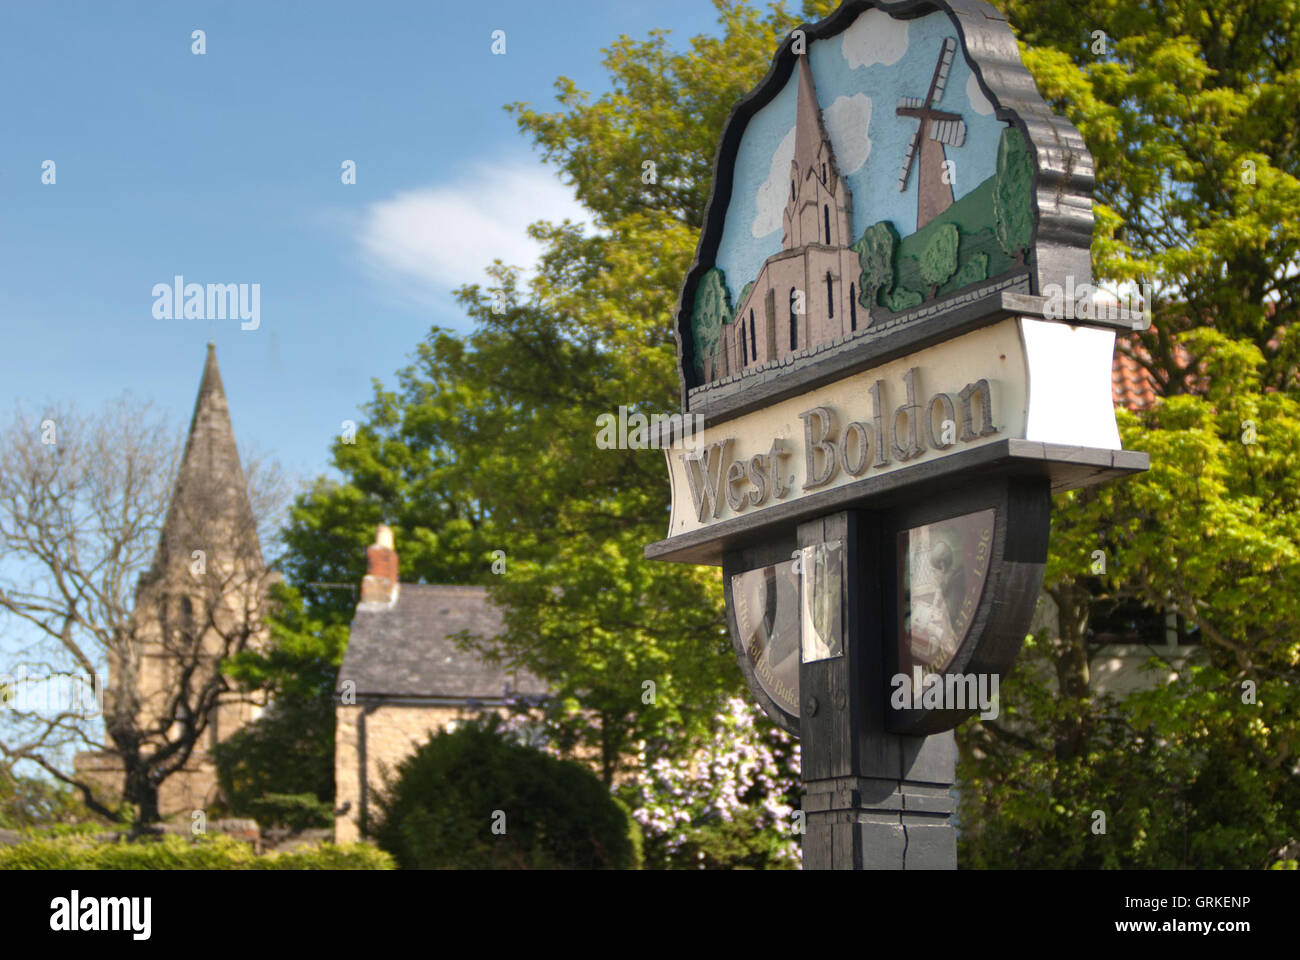 Melden Sie sich für West Boldon Village, South Tyneside Stockfoto